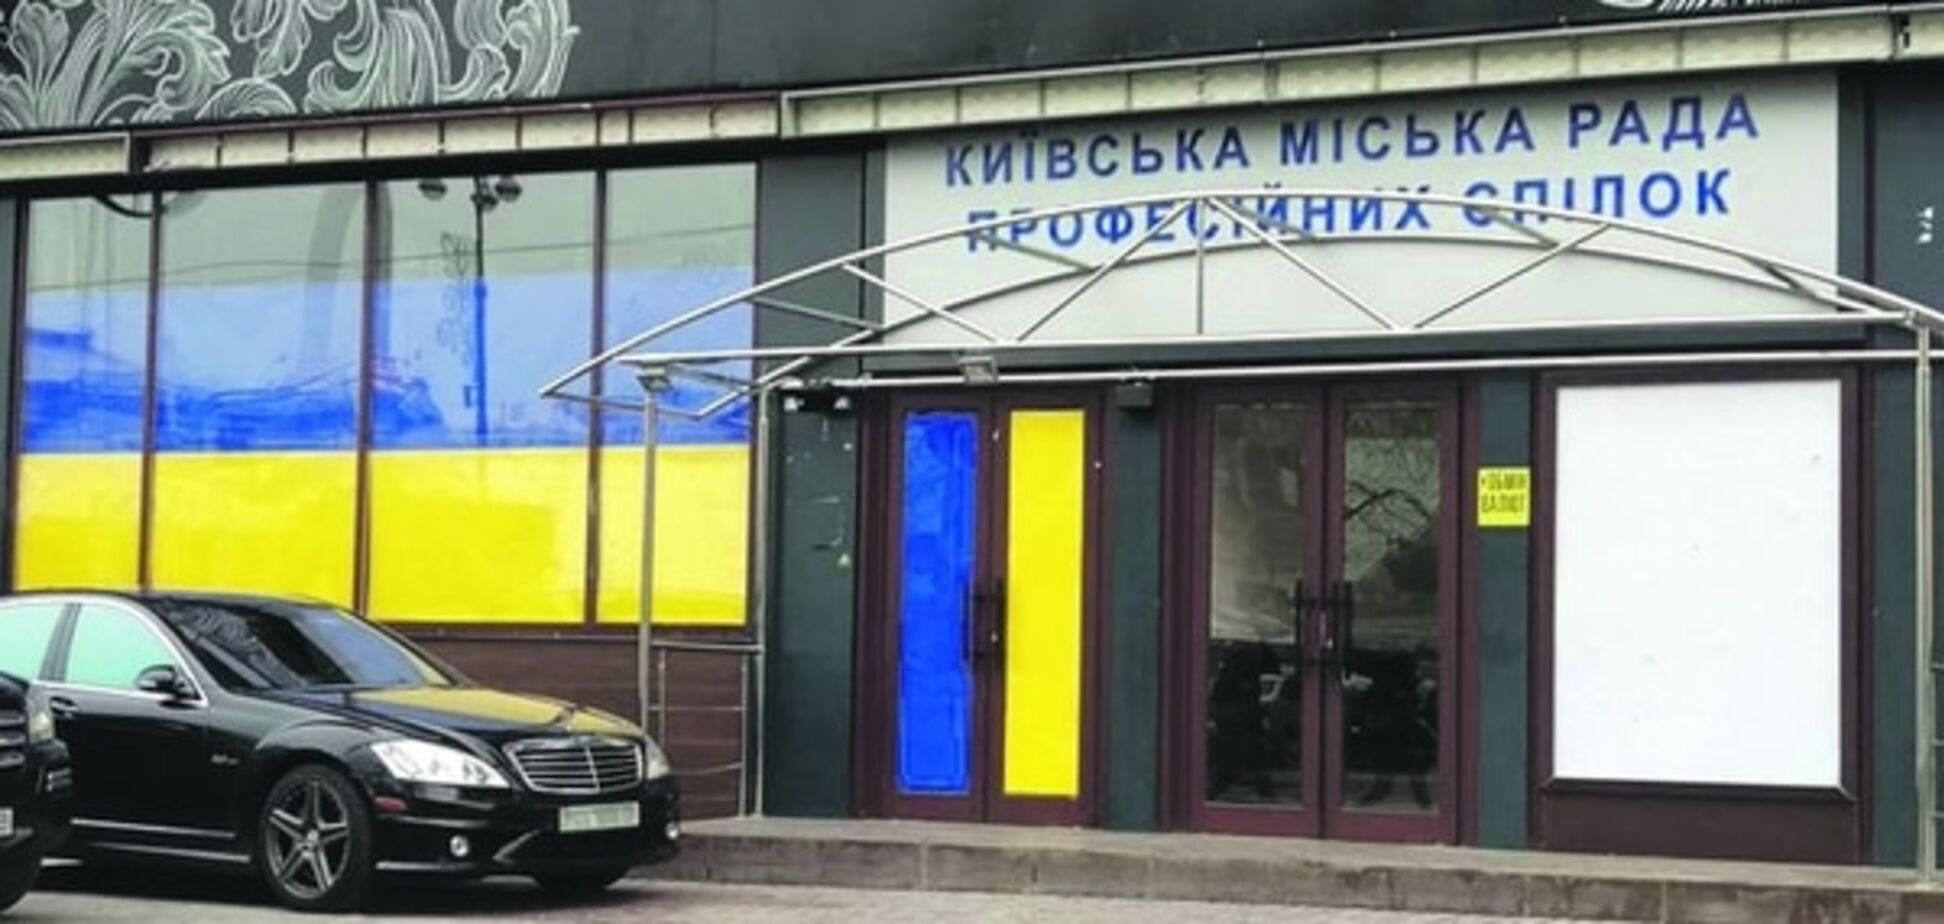 Украинская L'Kaffa: скандальное кафе в Киеве завесили флагами. Фотофакт